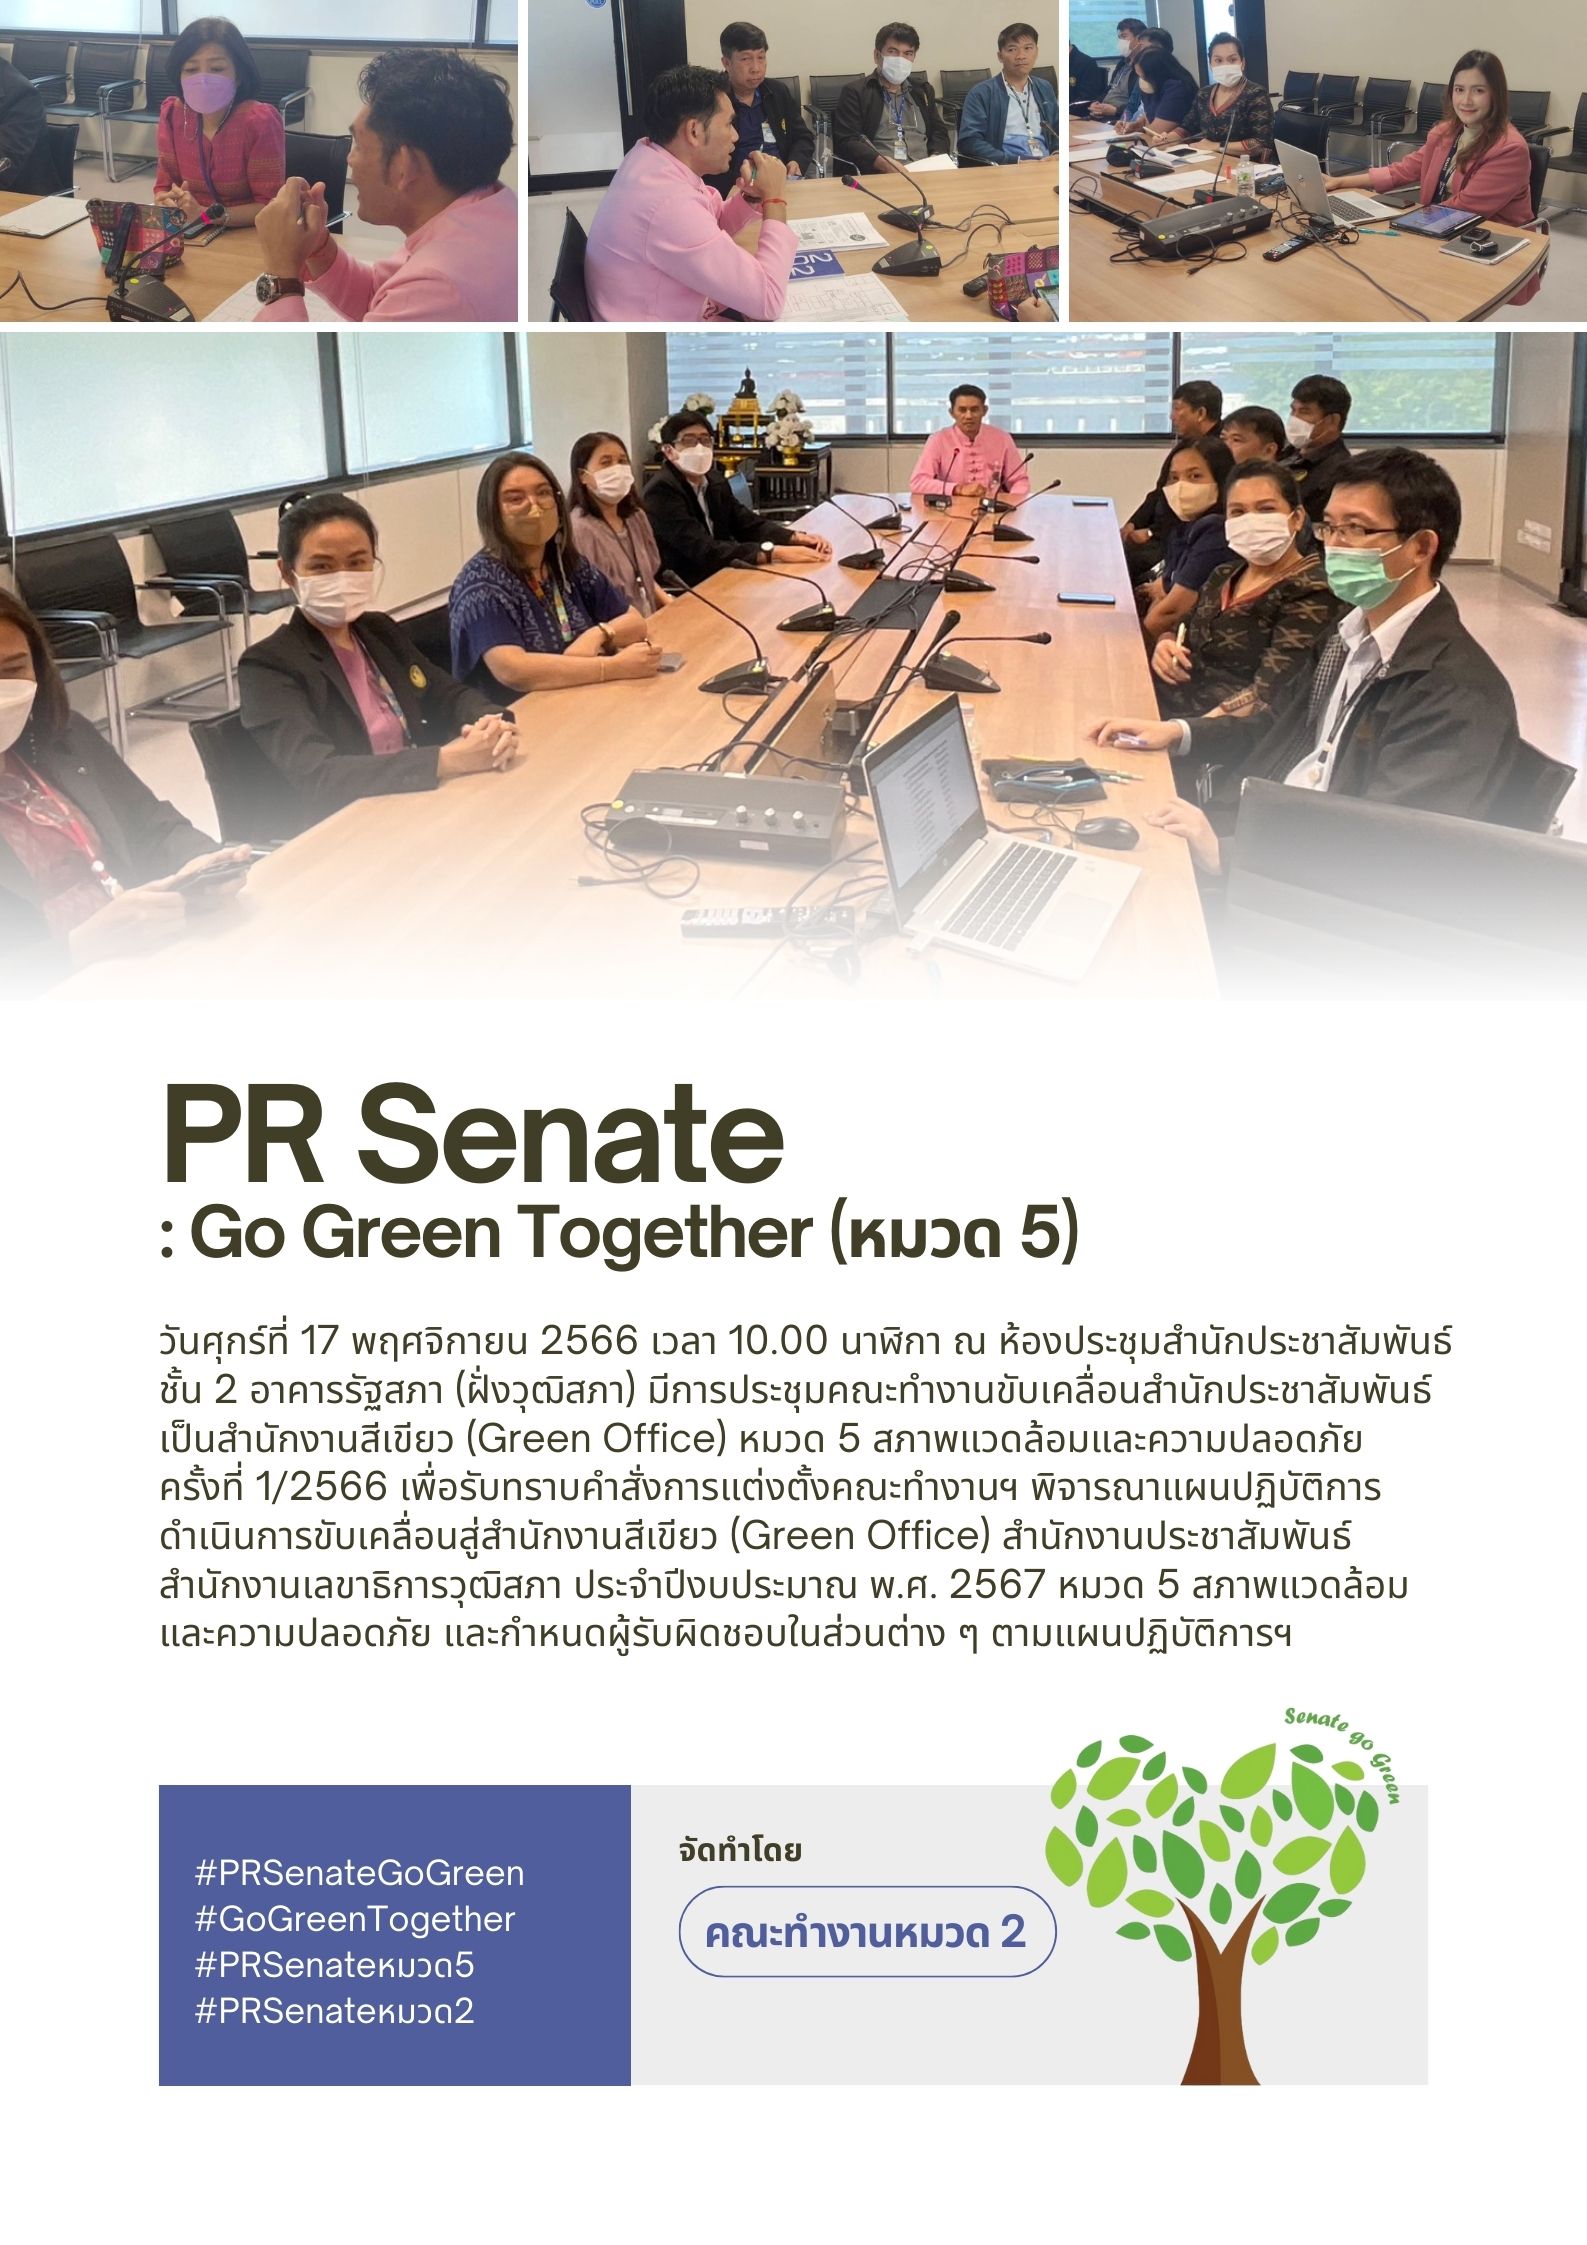 วันศุกร์ที่ 17 พฤศจิกายน 2566 เวลา 10.00 นาฬิกาประชุมคณะทำงานขับเคลื่อนสำนักประชาสัมพันธ์ เป็นสำนักงานสีเขียว (Green Office) หมวด 5 สภาพแวดล้อมและความปลอดภัย